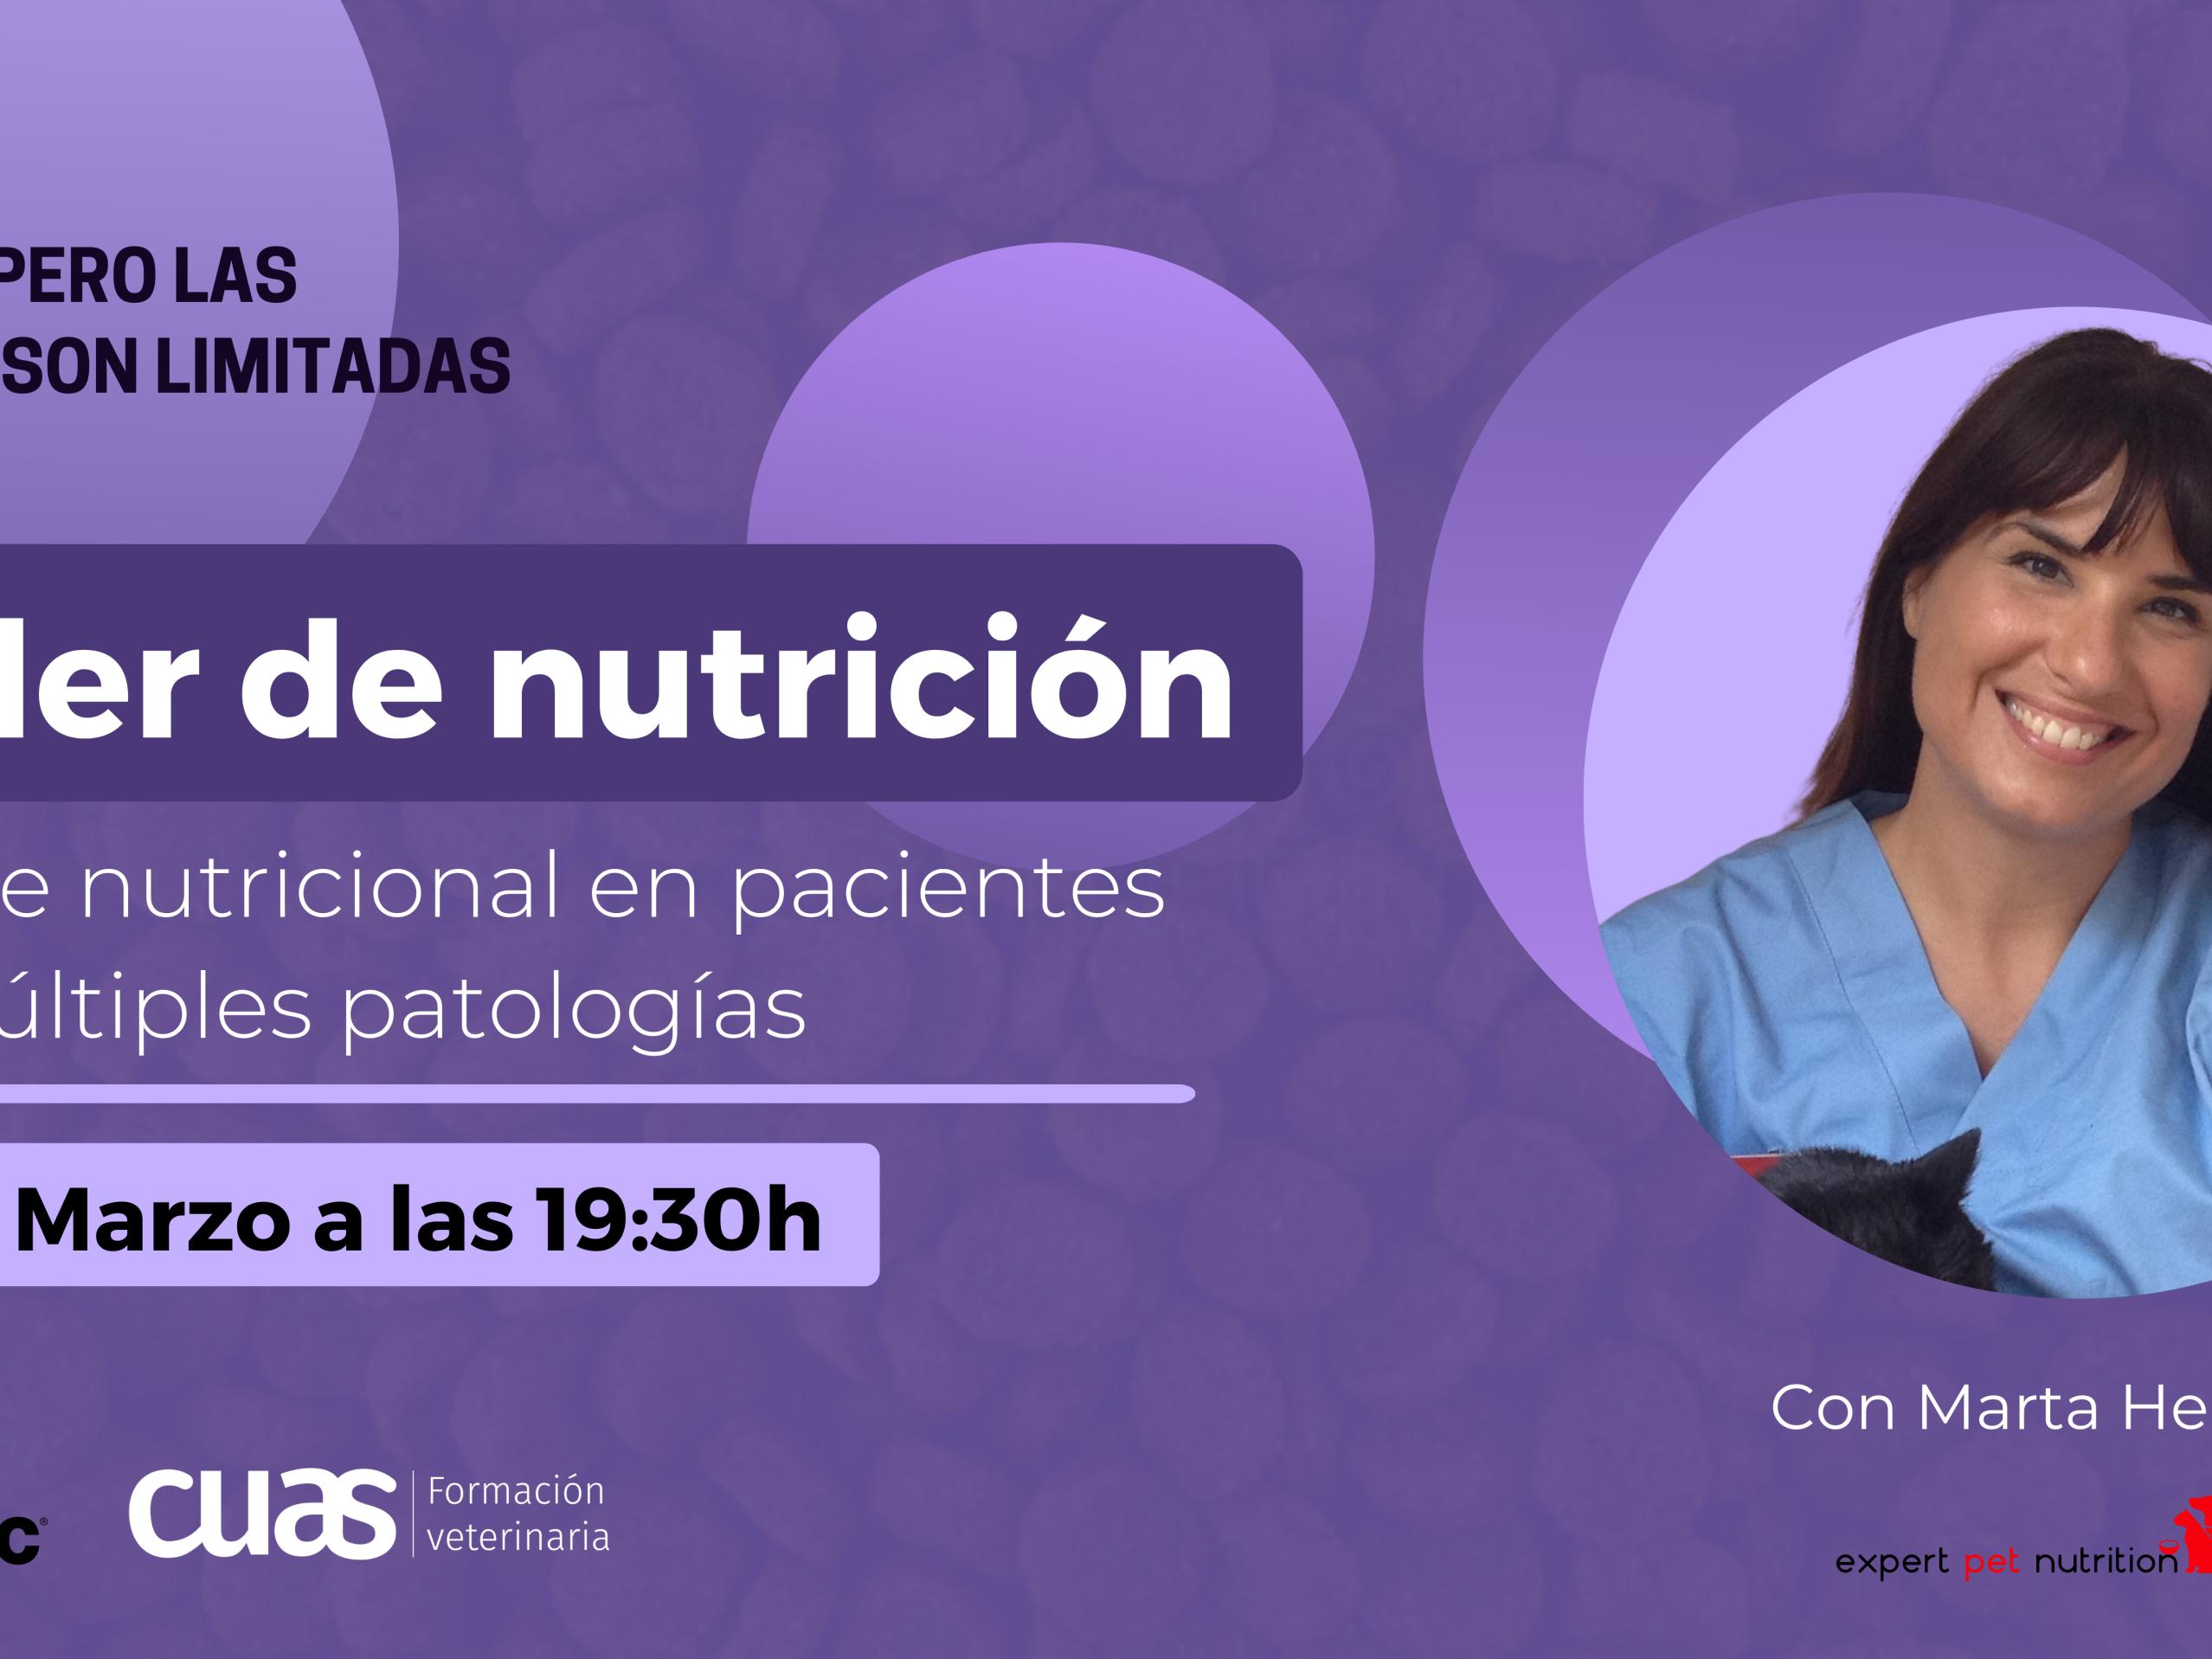 SPECIFIC patrocina um seminário de nutrição gratuito para veterinários com Marta Hervera da academia Cuas - Formação Veterinária.